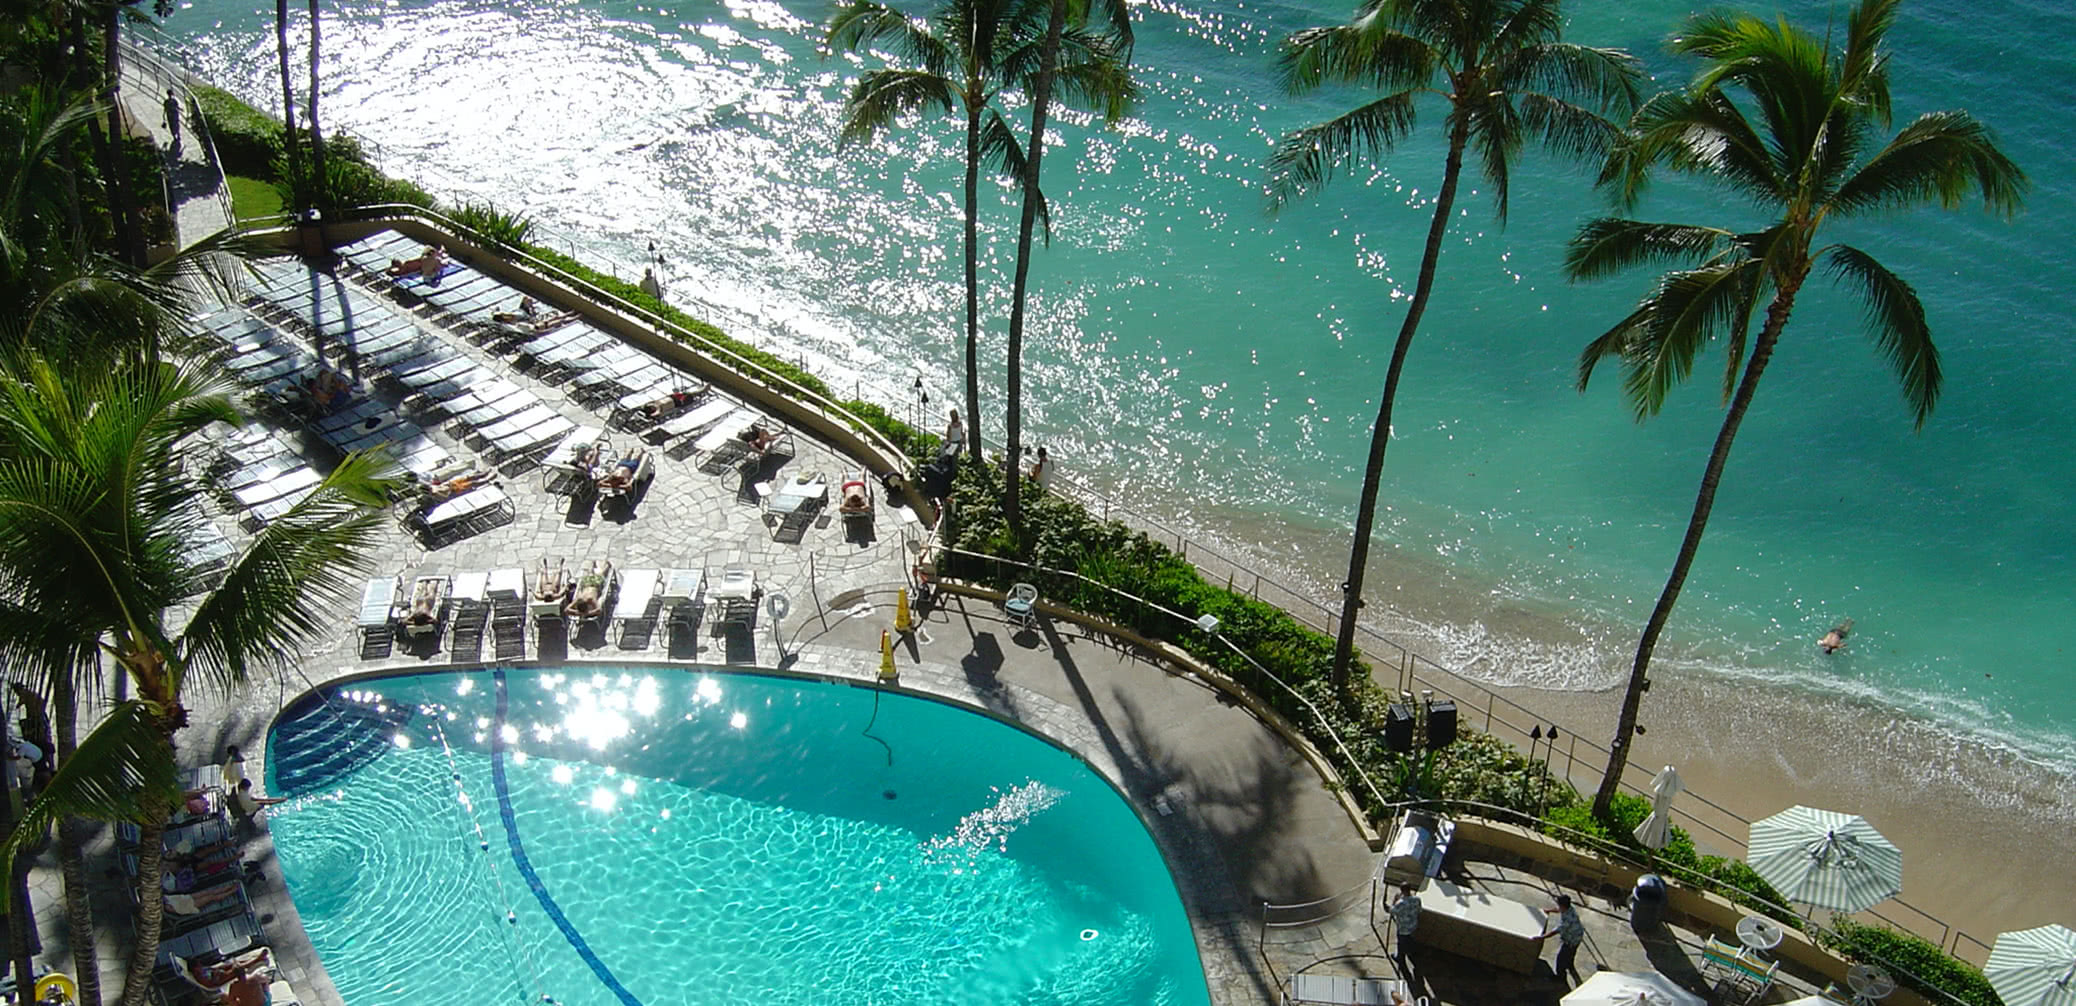 Top 10 Best Marriott Hotels In Hawaii For Your Honeymoon